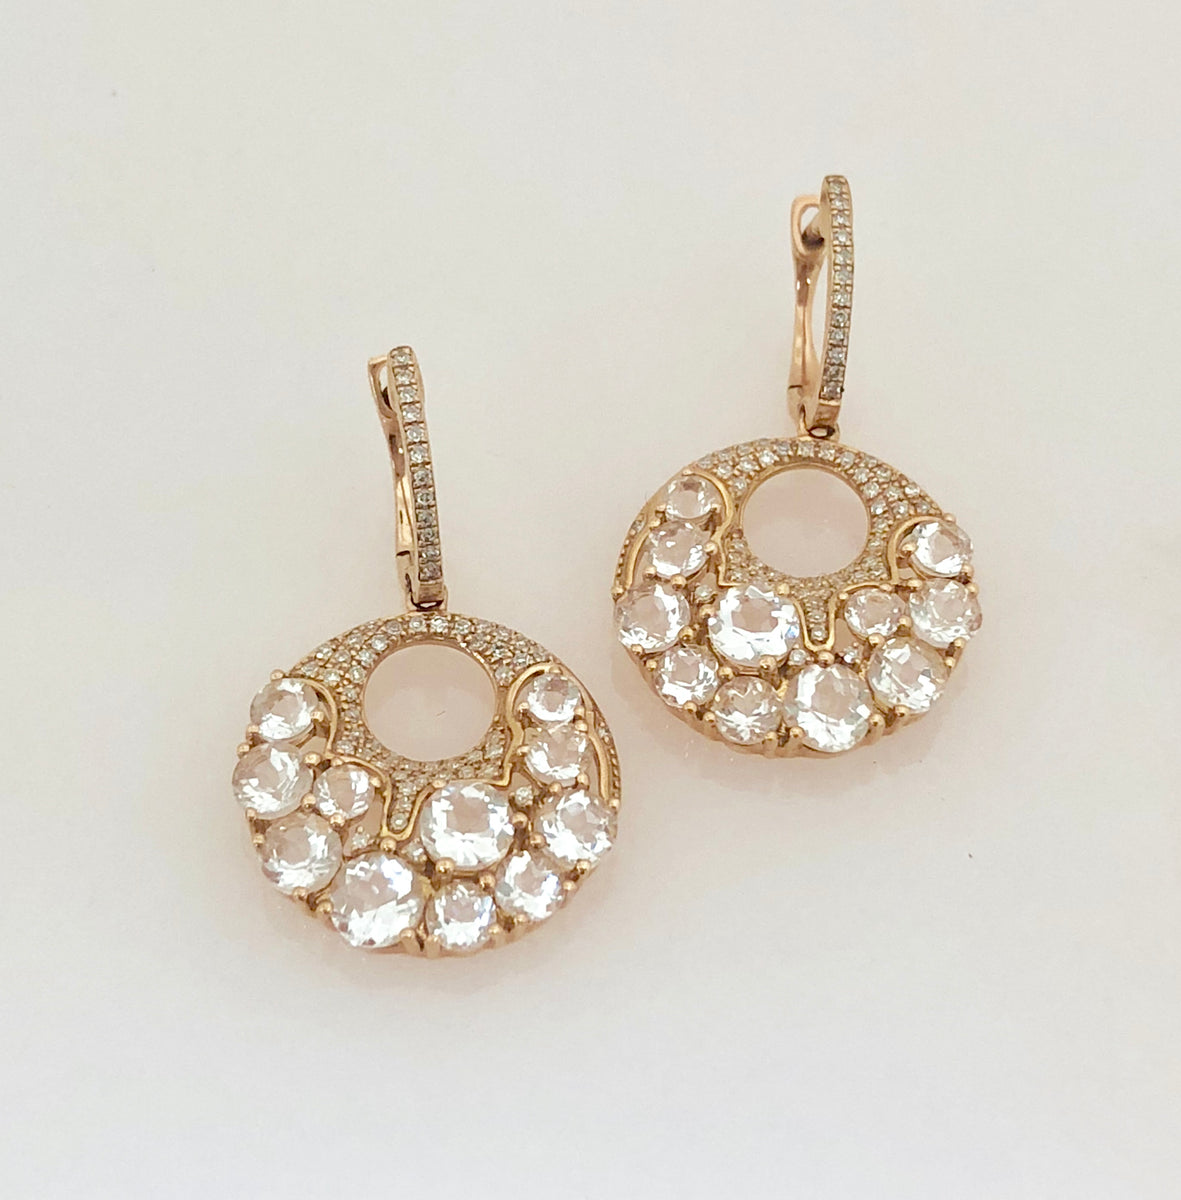 Earrings | Diamond, Pearl, Gemstone & Metal – Jewelry Design Gallery of ...